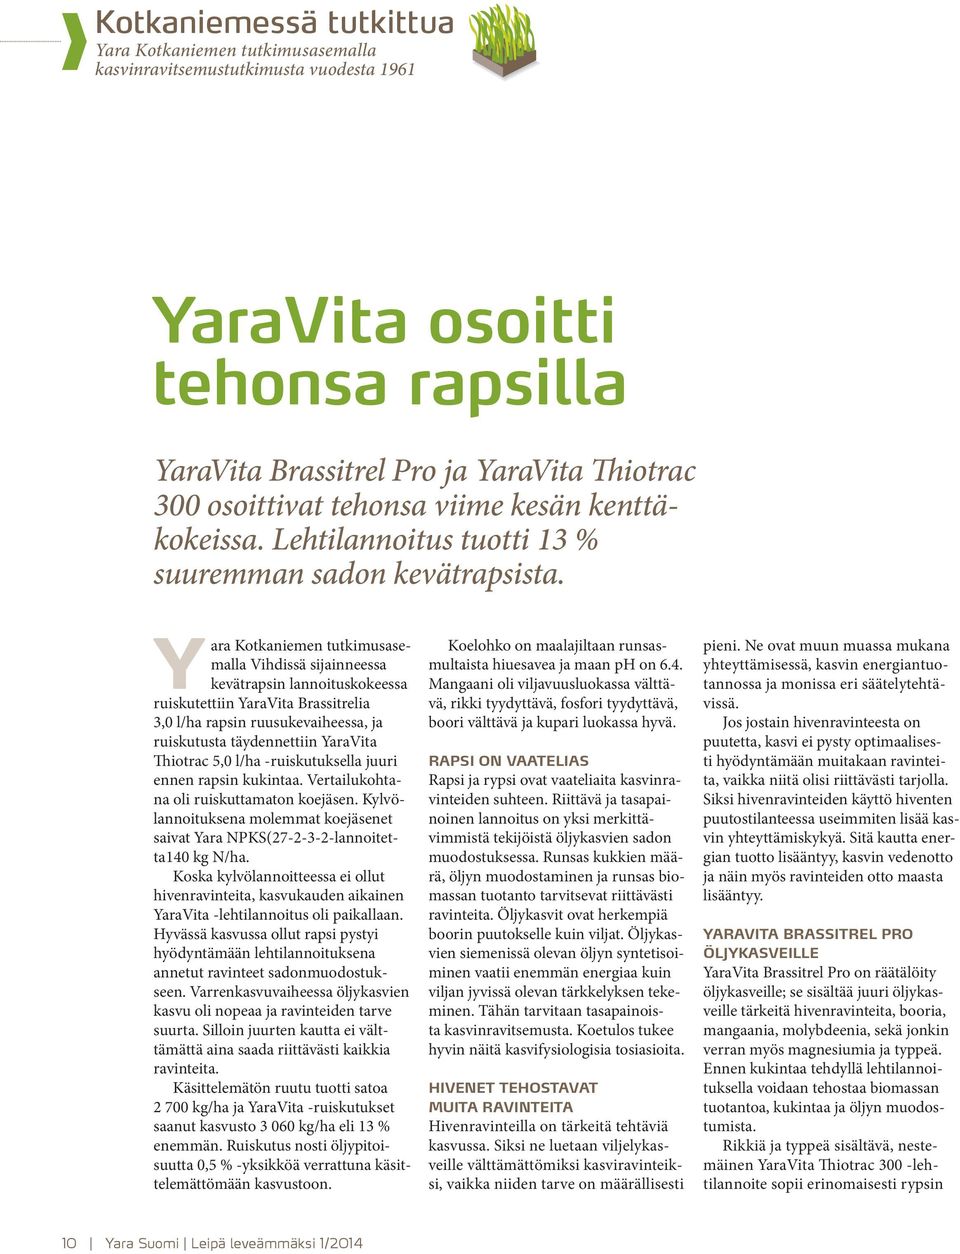 Yara Kotkaniemen tutkimusasemalla Vihdissä sijainneessa kevätrapsin lannoituskokeessa ruiskutettiin YaraVita Brassitrelia 3,0 l/ha rapsin ruusukevaiheessa, ja ruiskutusta täydennettiin YaraVita